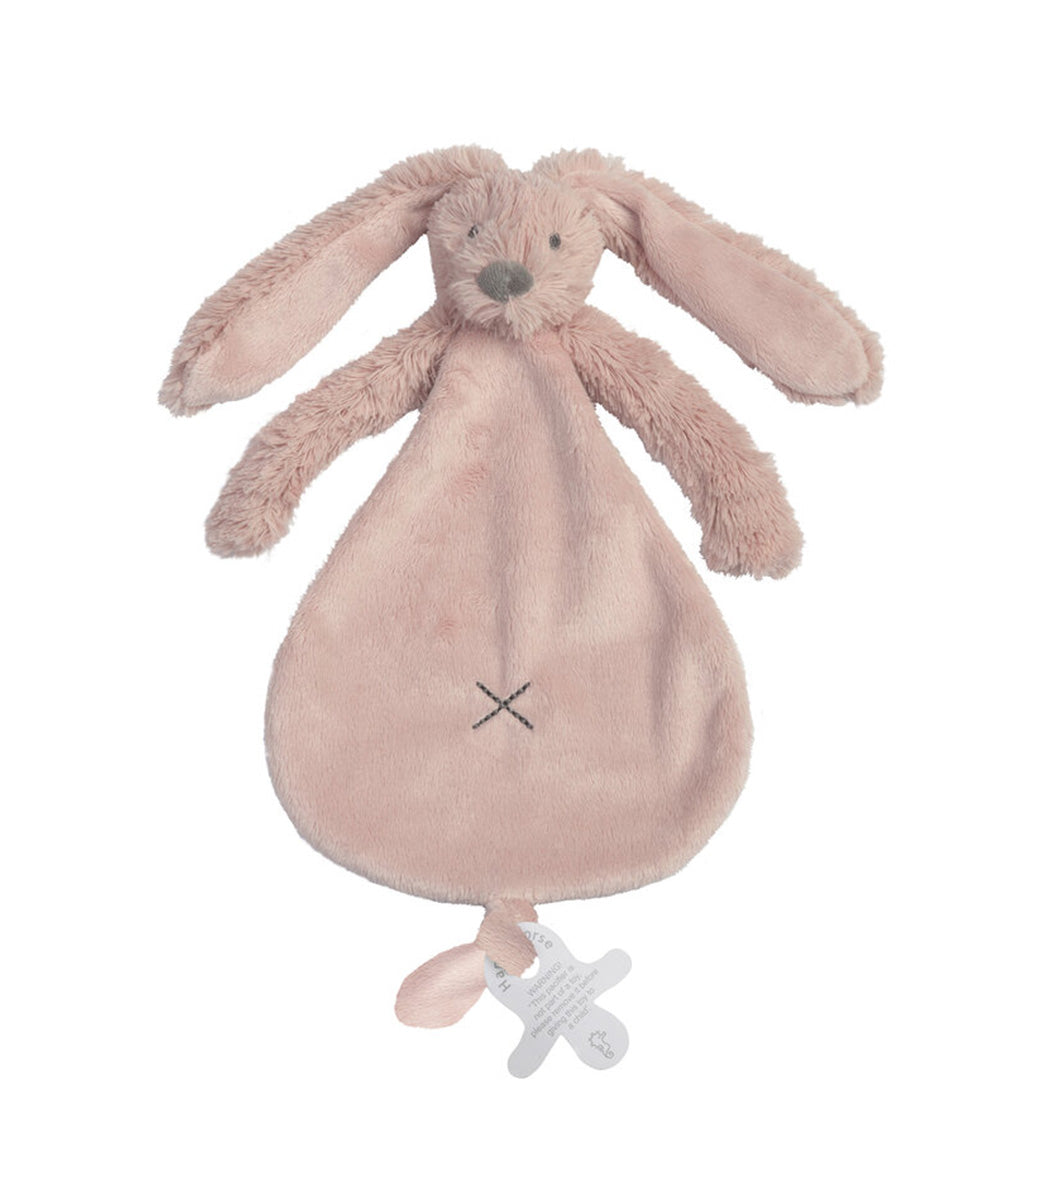 Speendoekje rabbit Richie // Oud roze (optie: borduren met naam)